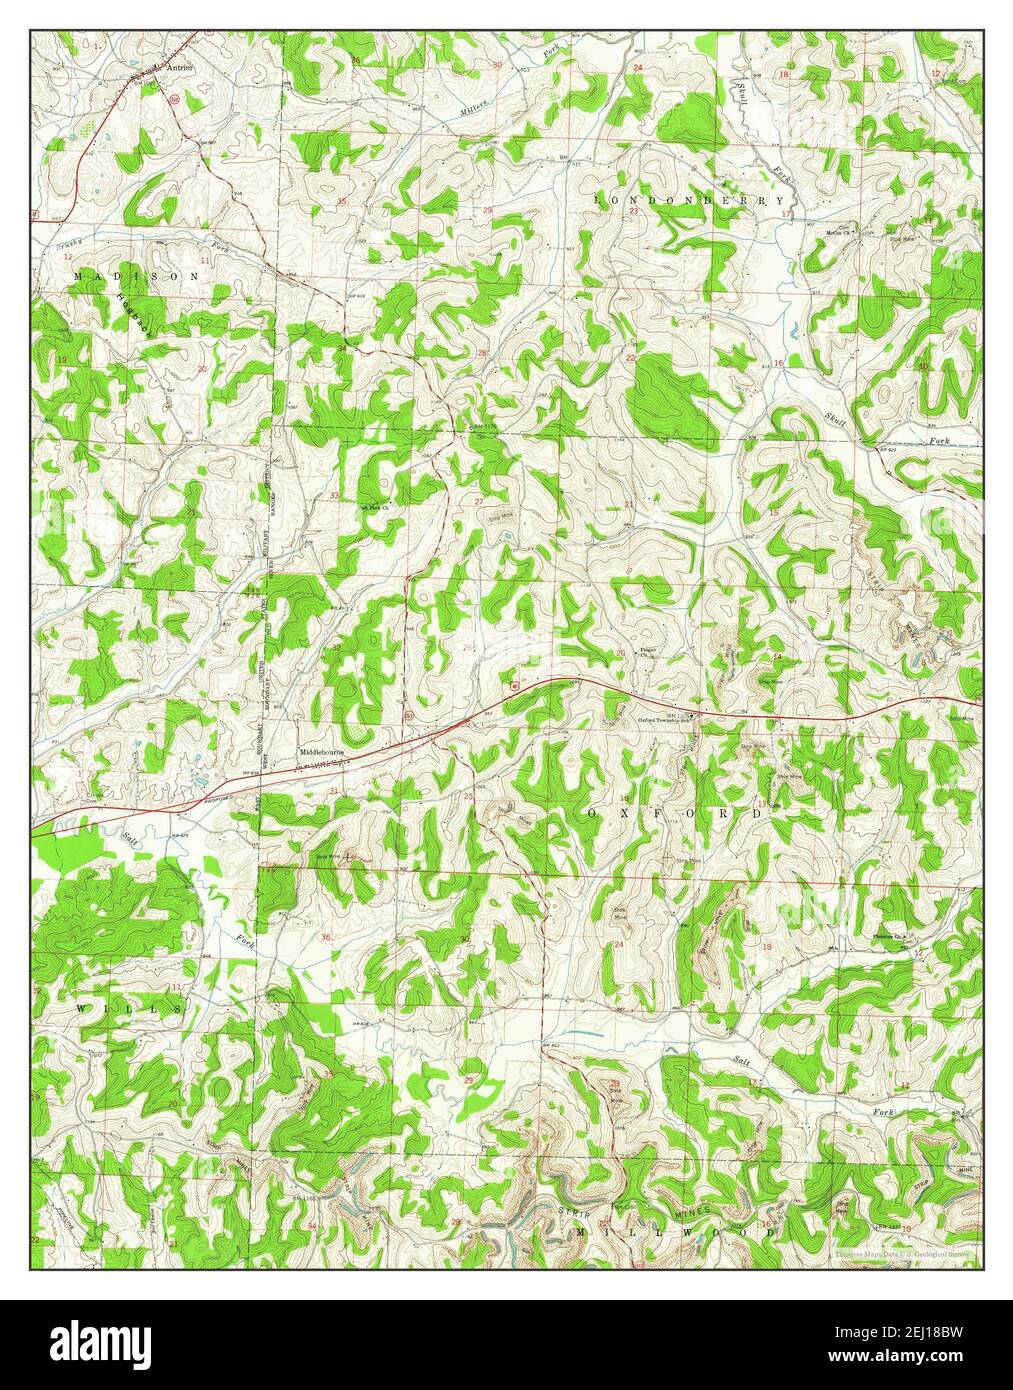 Antrim, Ohio, Karte 1962, 1:24000, Vereinigte Staaten von Amerika von Timeless Maps, Daten U.S. Geological Survey Stockfoto